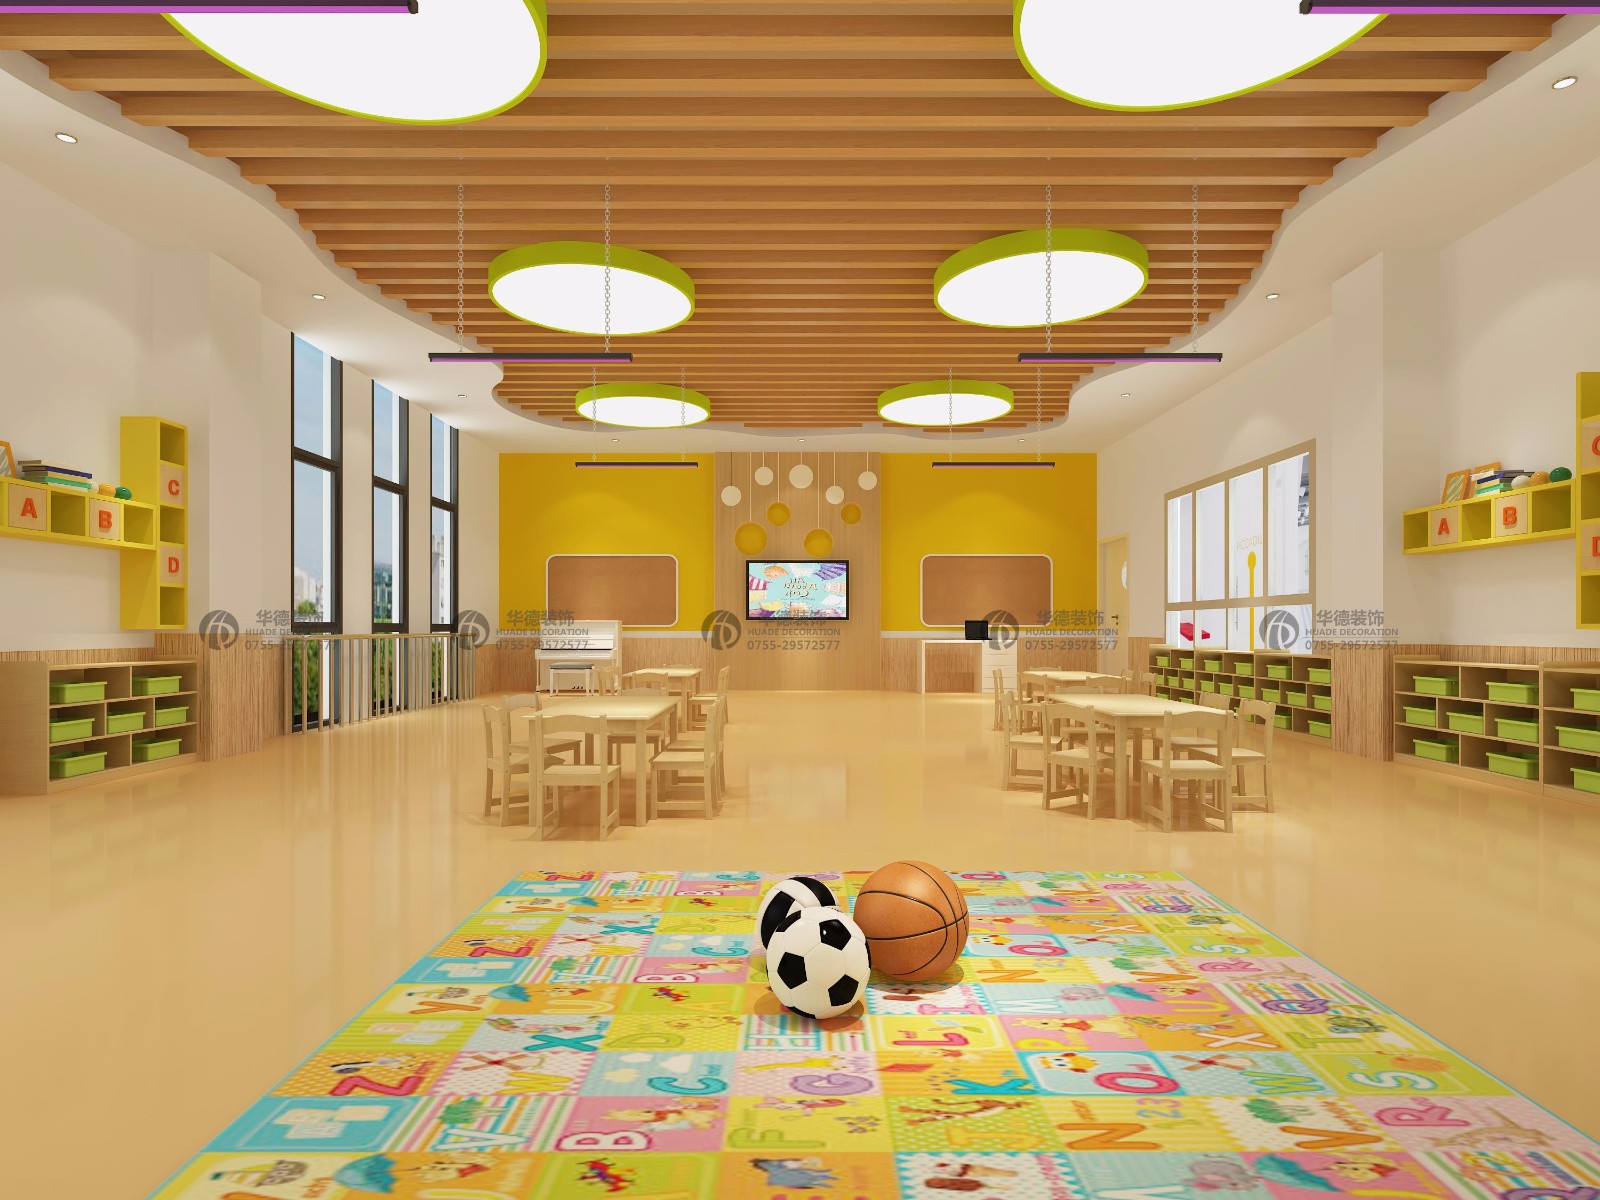 三套幼儿园方案CAD文件及效果图-教育建筑-筑龙建筑设计论坛